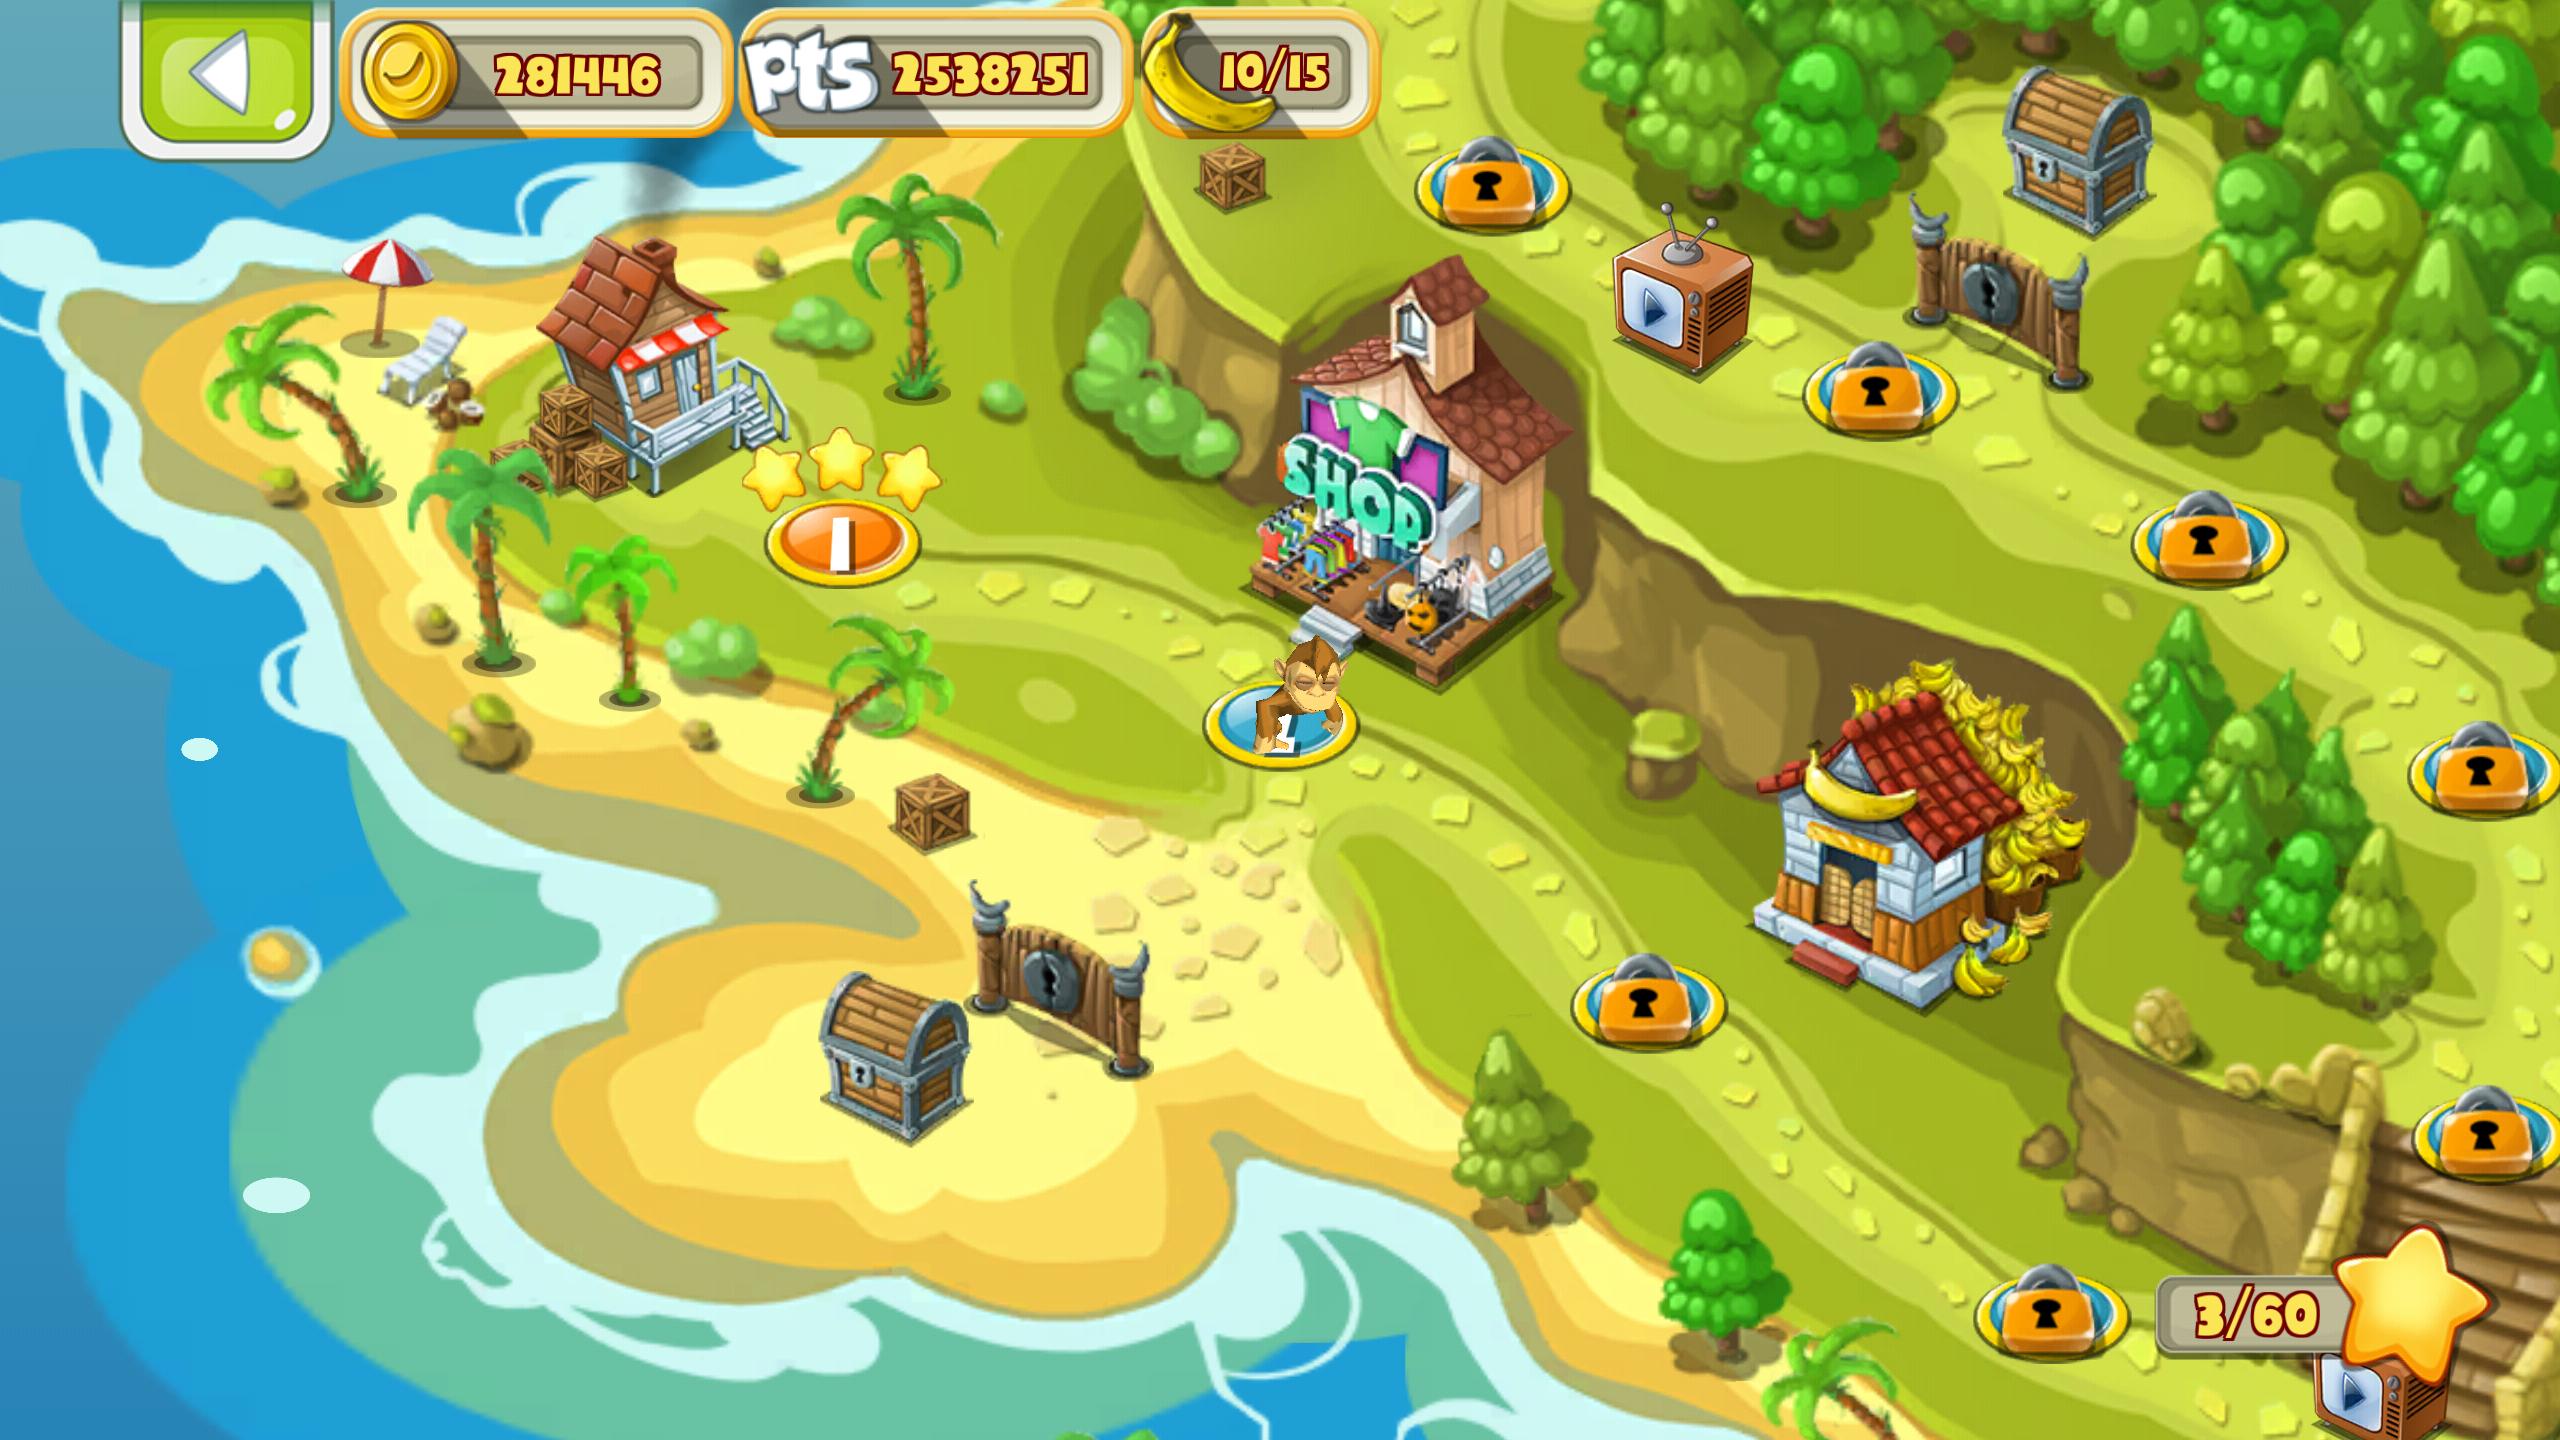 Игры про остров на андроид. Приключения обезьяны игра. Остров приключений игра с обезьяной. Игры про обезьян на острове для андроид. Banana Island игра.